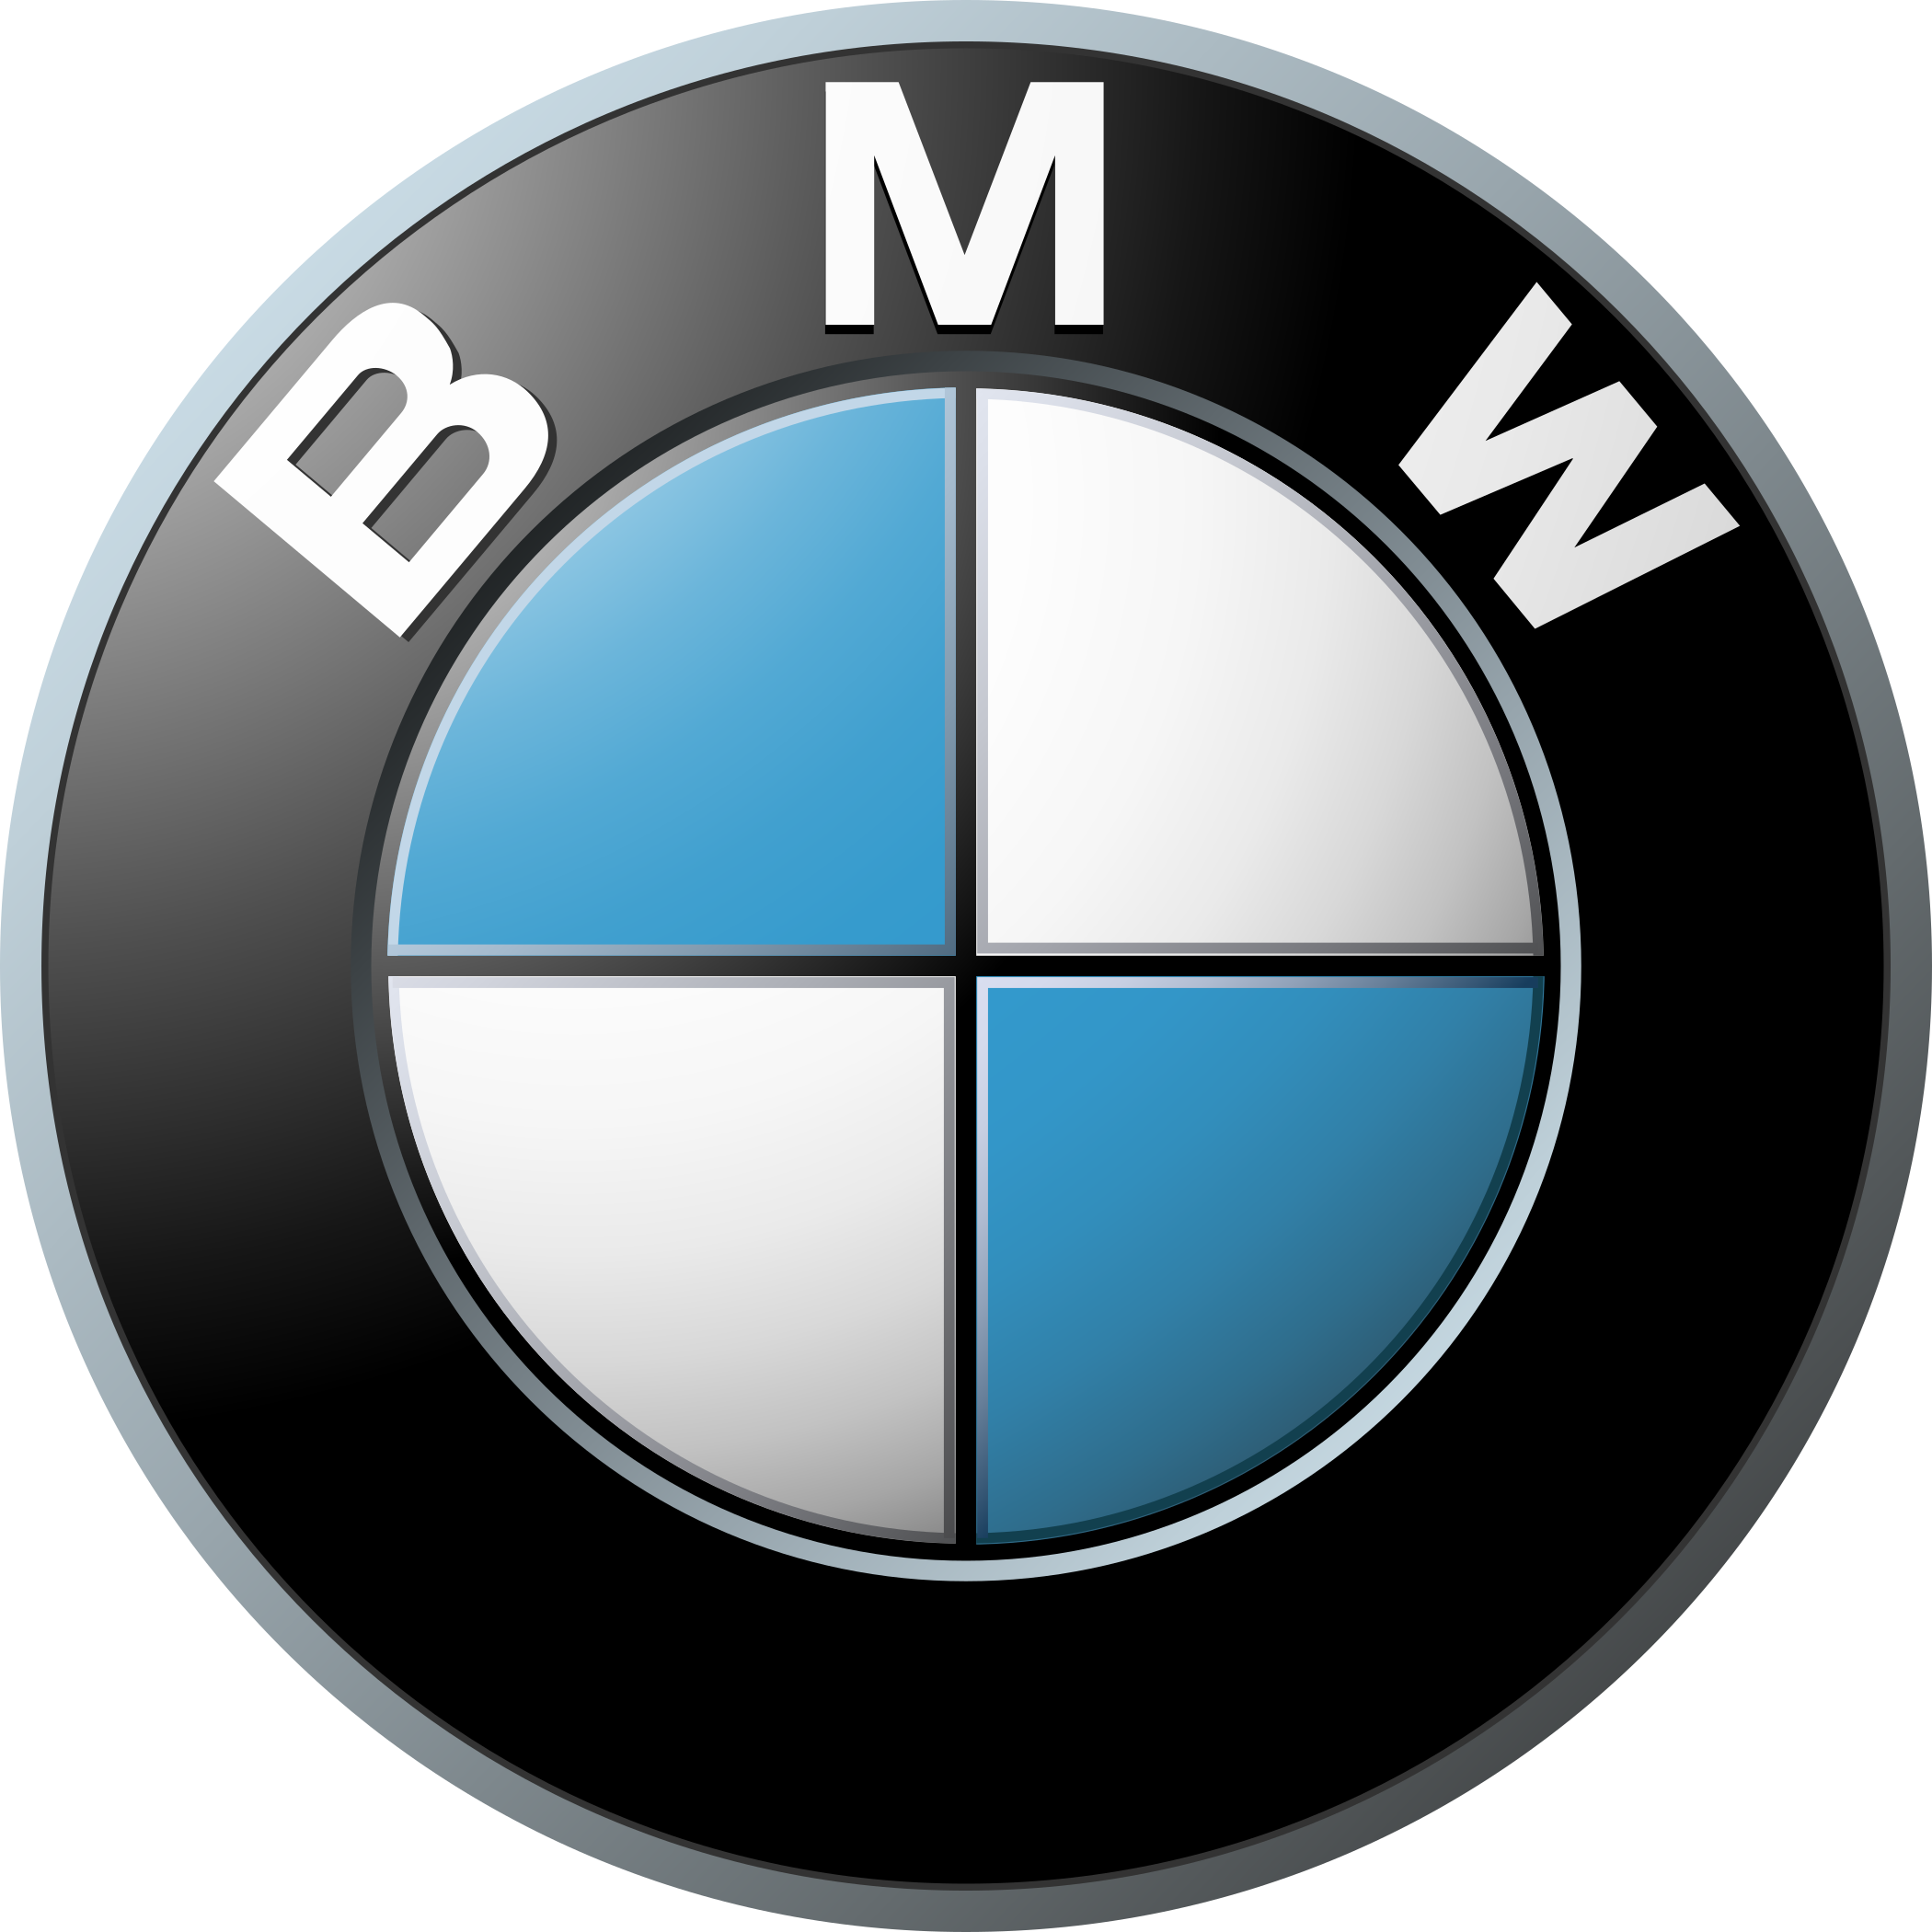 bmw logo 1 1 - BMW Logo